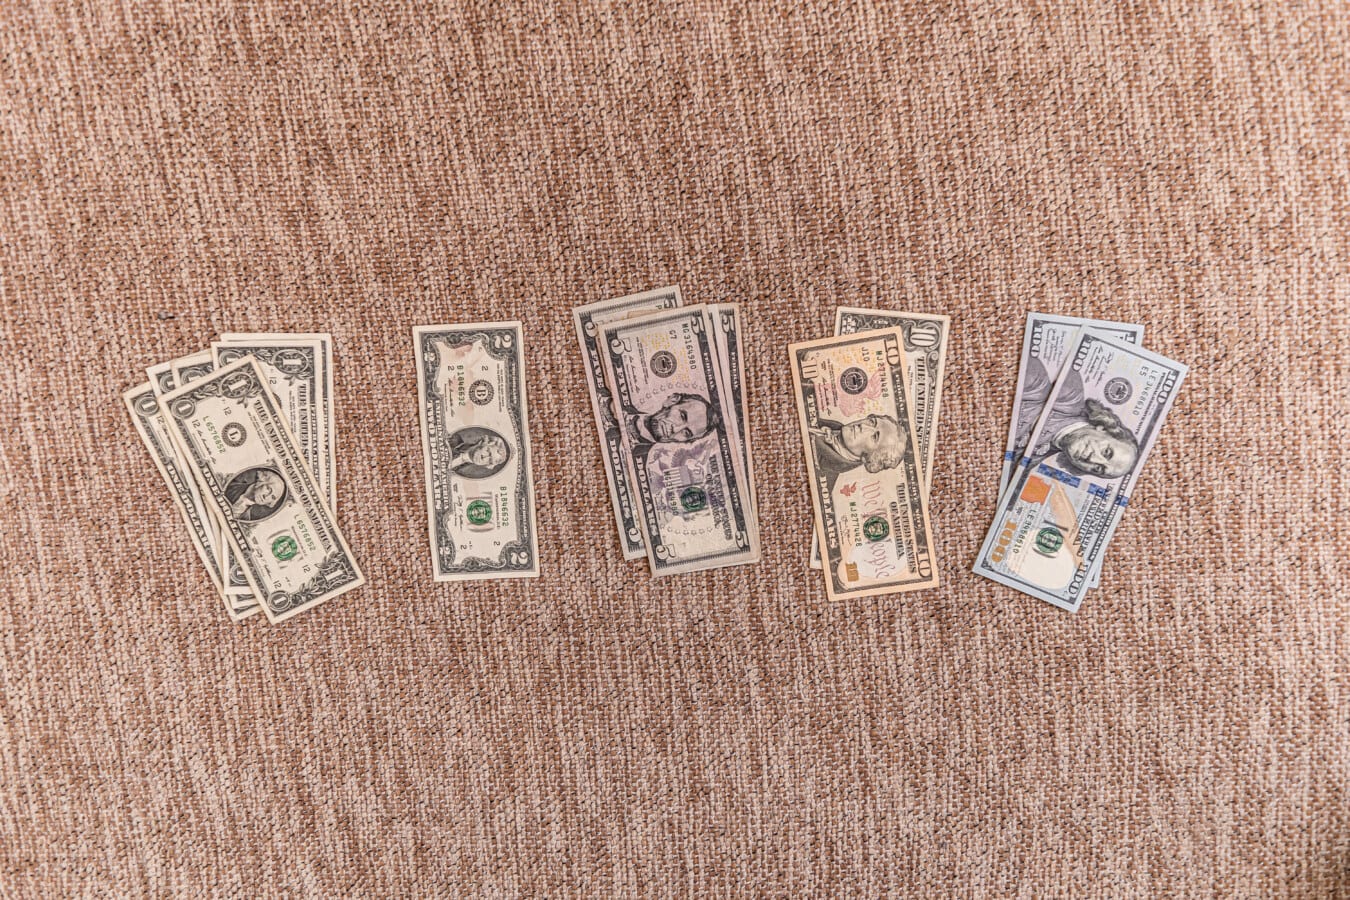 dolar, hotovost, papírové peníze, kolekce, Spojené státy americké, papír, měna, peníze, hnědá, detaily